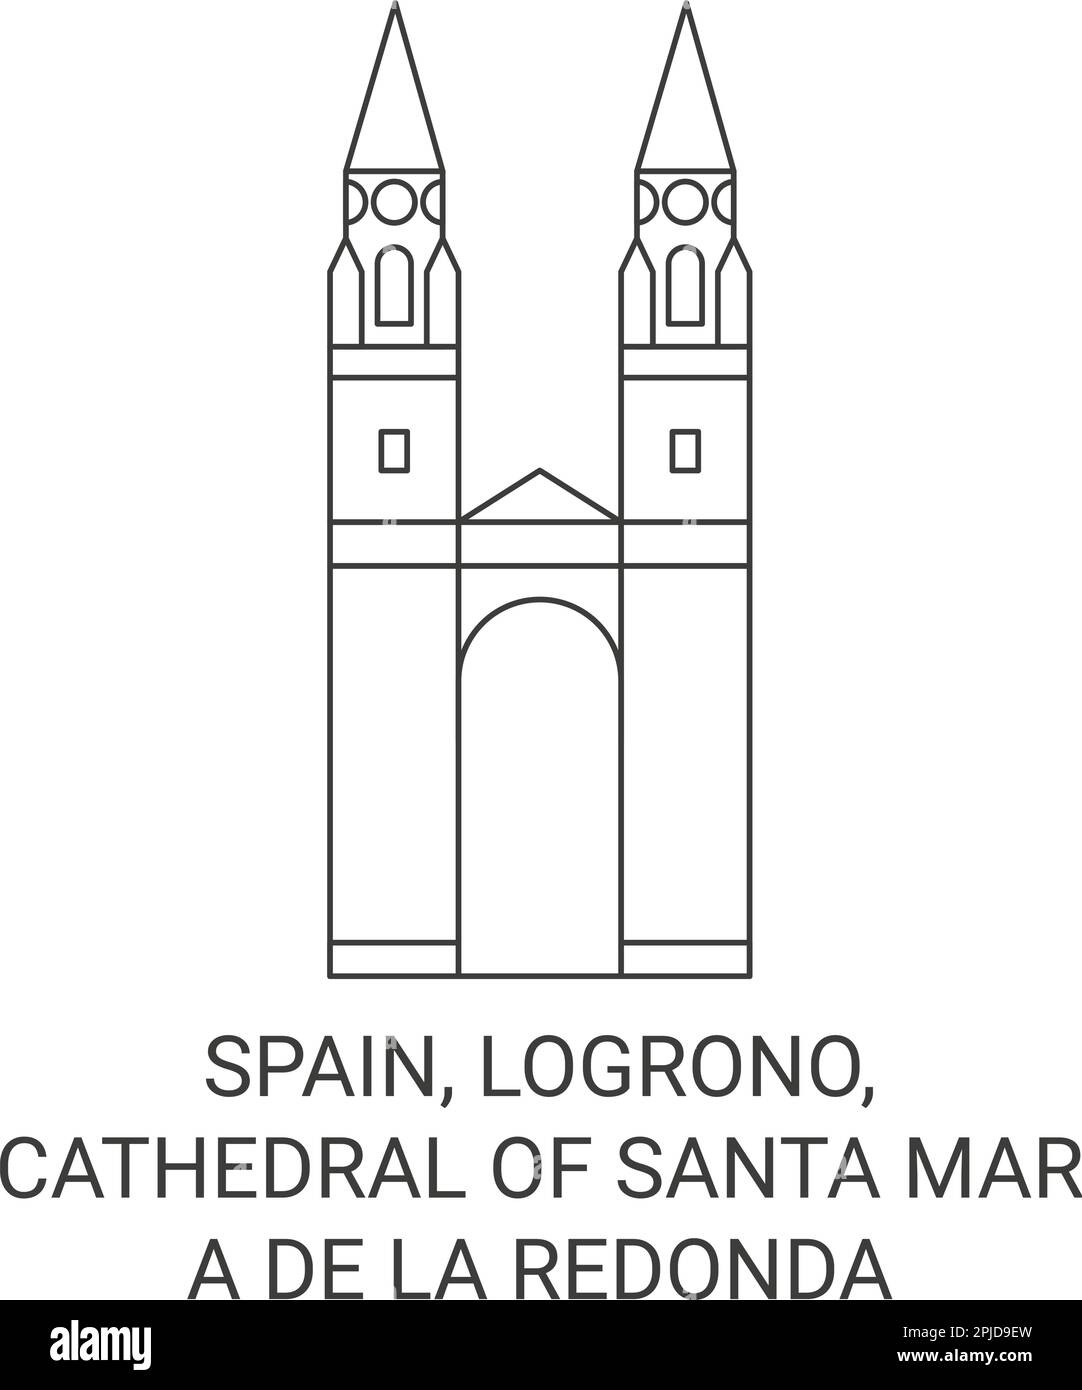 Espagne, Logrono, Cathédrale de Santa Mara de la Retonda Voyage repère illustration vecteur Illustration de Vecteur